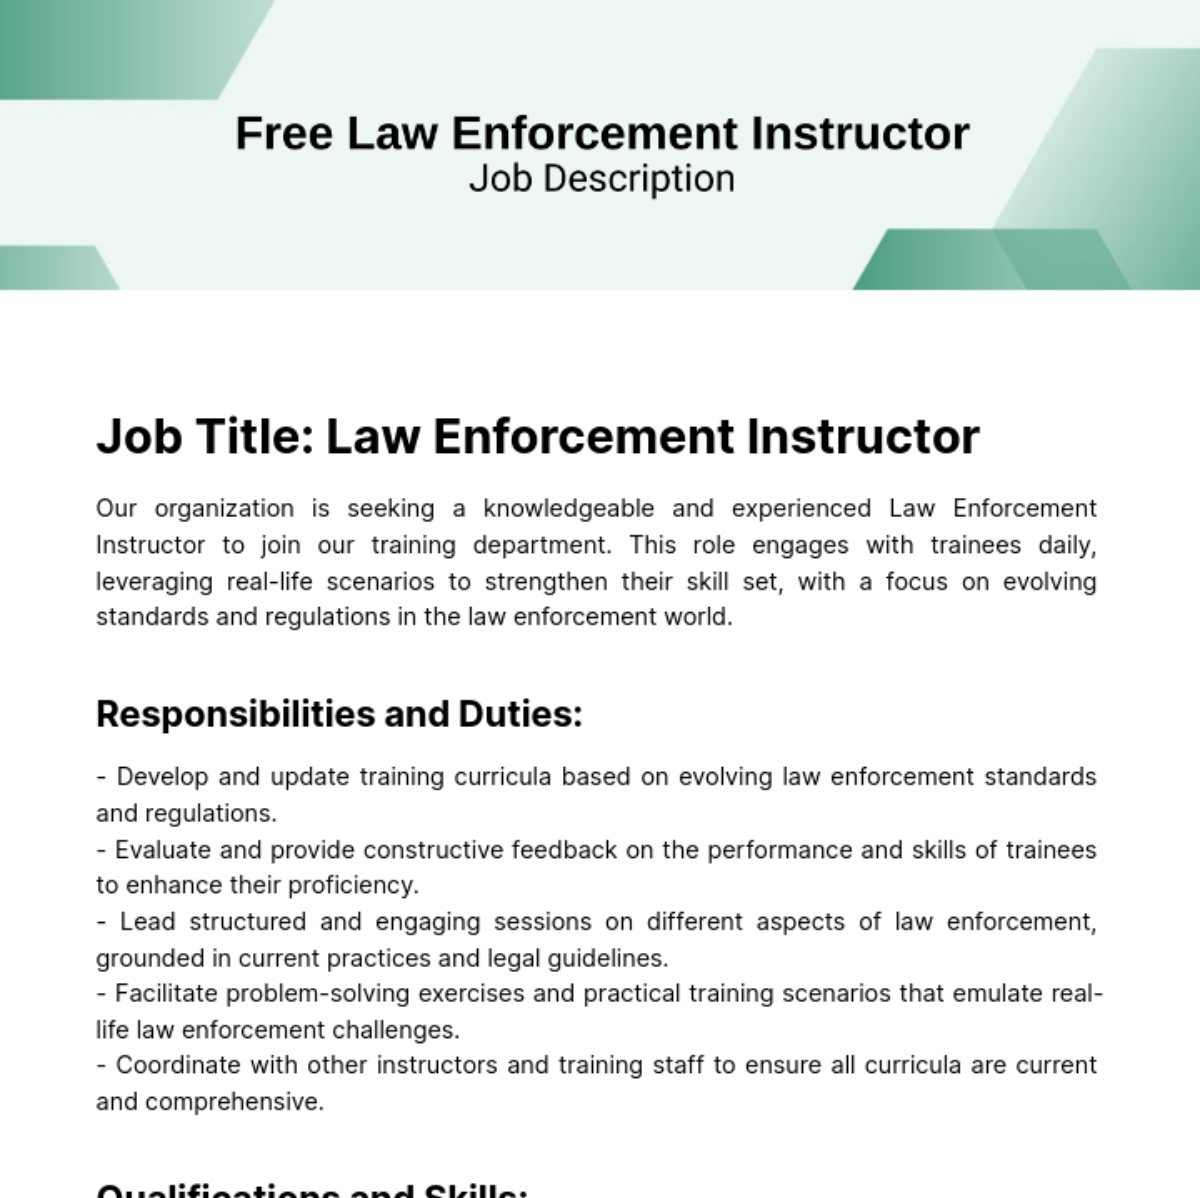 Free Law Enforcement Instructor Job Description Template